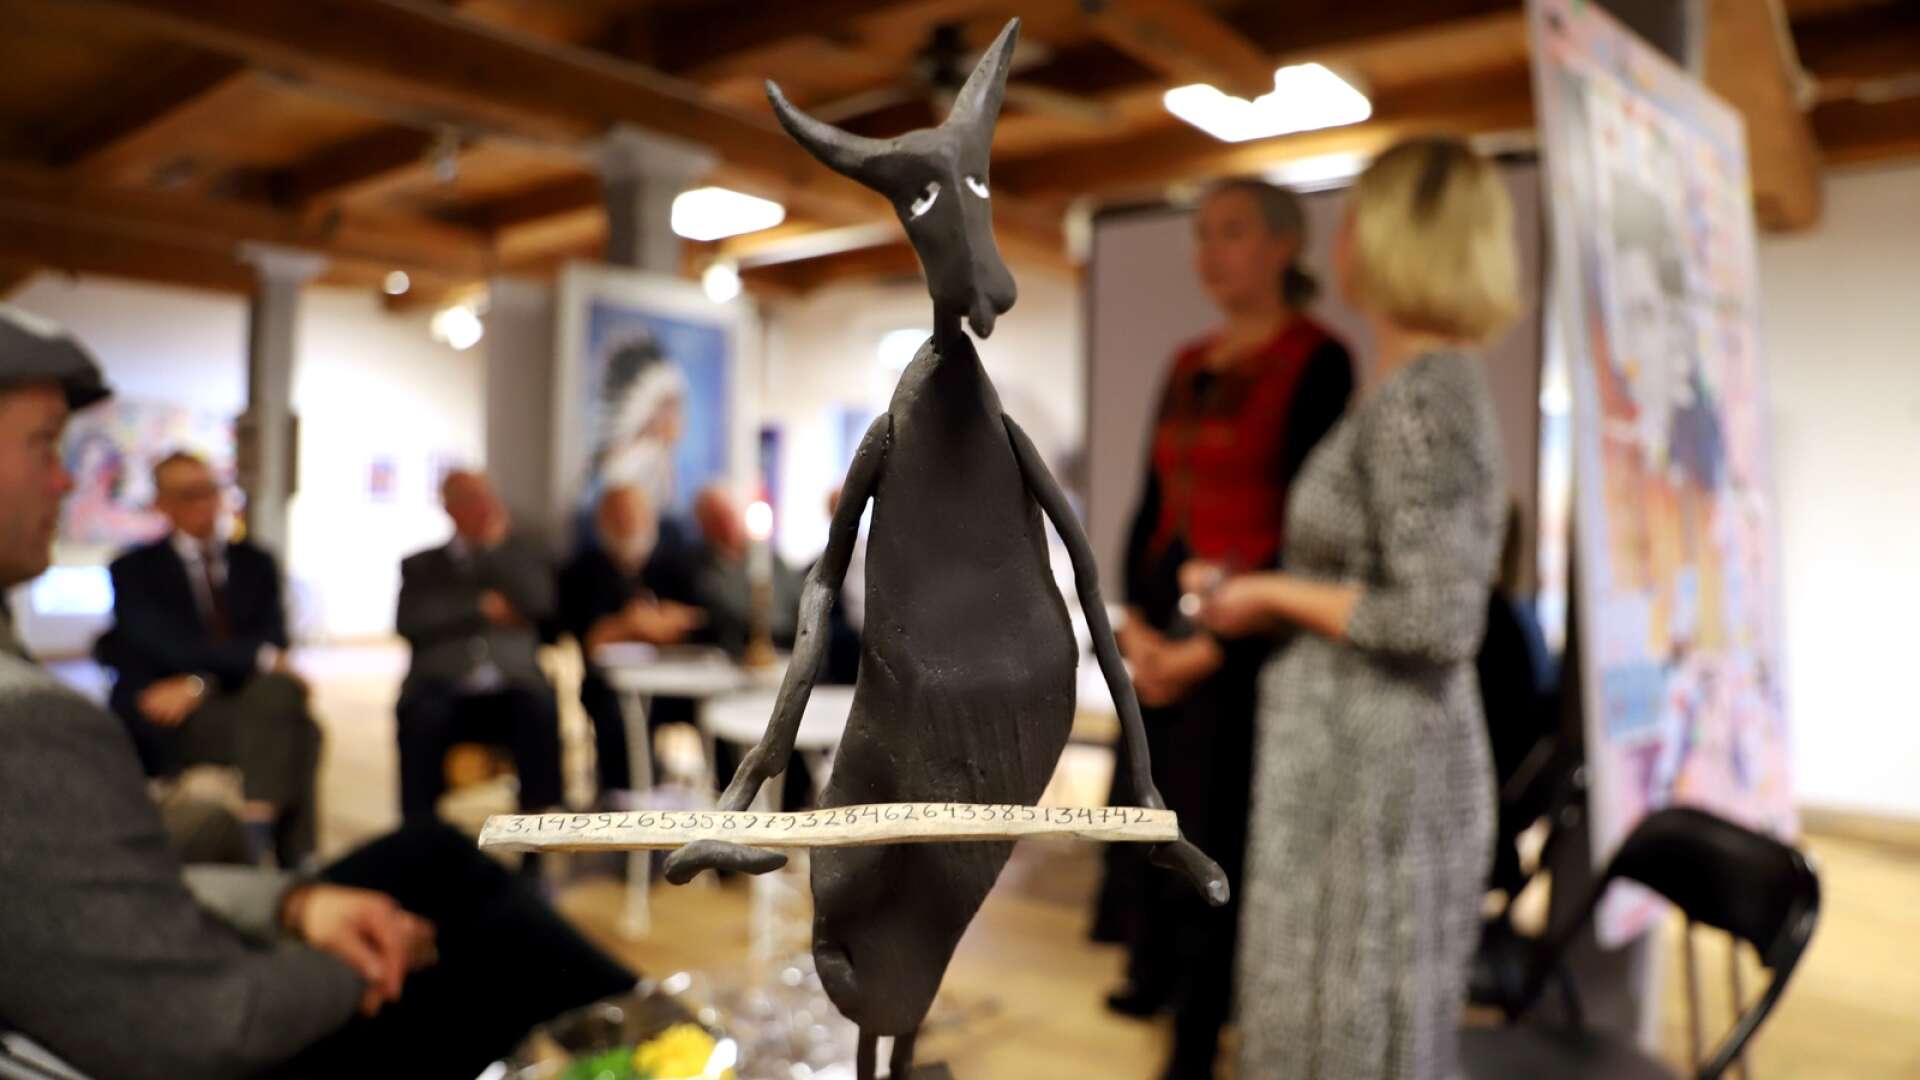 Värmländska akademien höll högtidssammankomst inför publik på Ferlinmuseet Kvarnen i Filipstad. Skulpturen med Pi-pinnen i famnen är pristagaren Vildhjärtas tacktal.